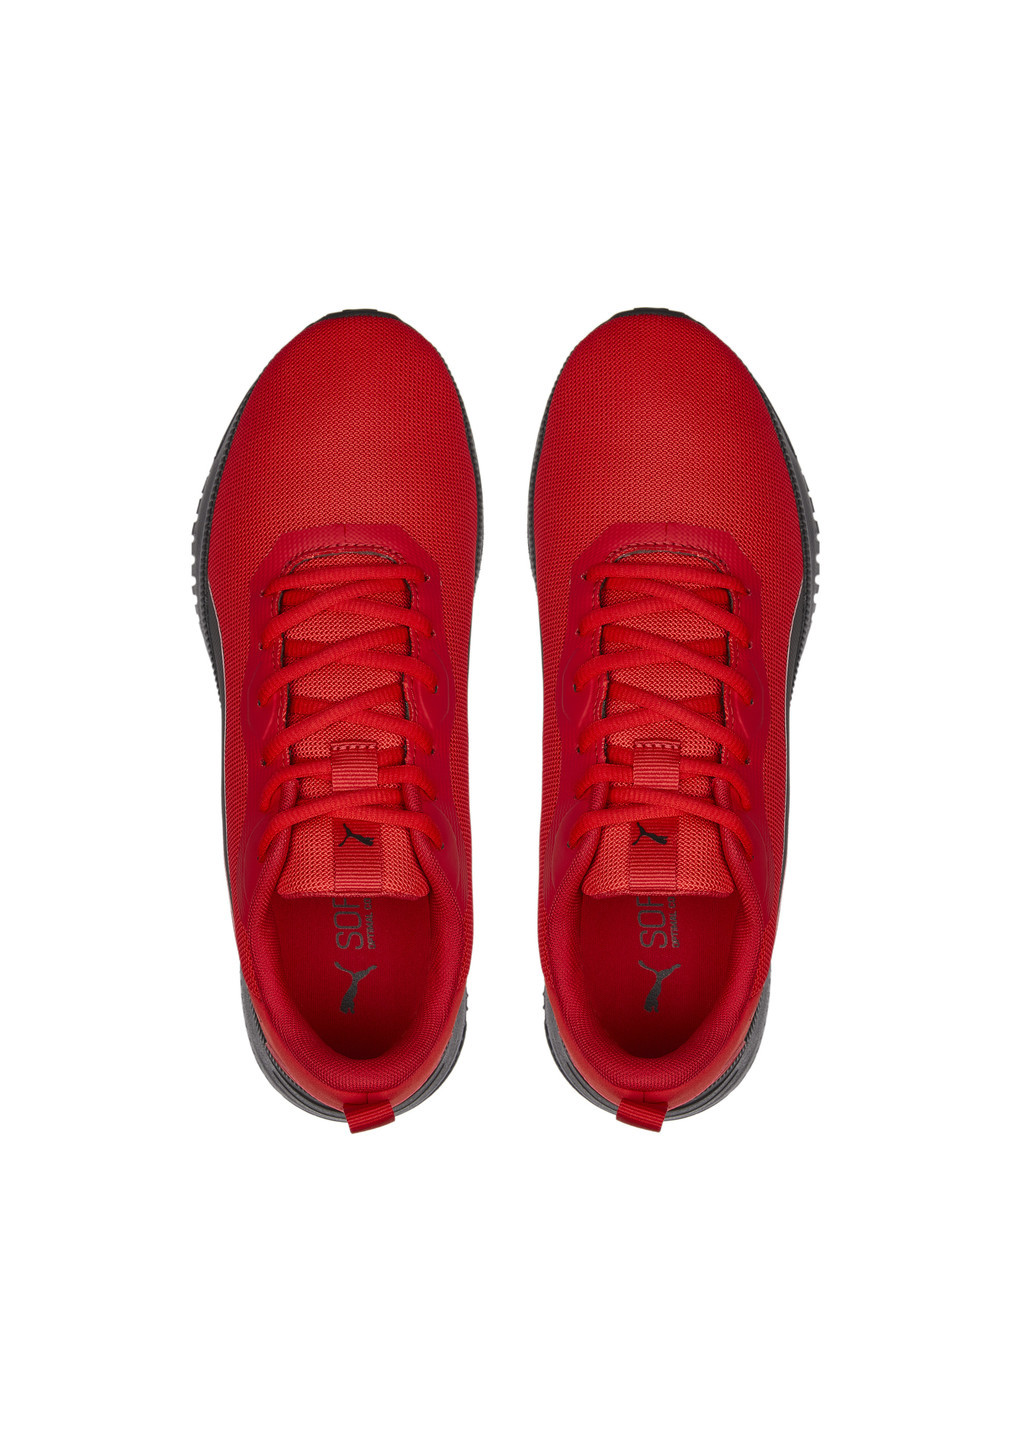 Красные всесезонные кроссовки flyer flex running shoes Puma